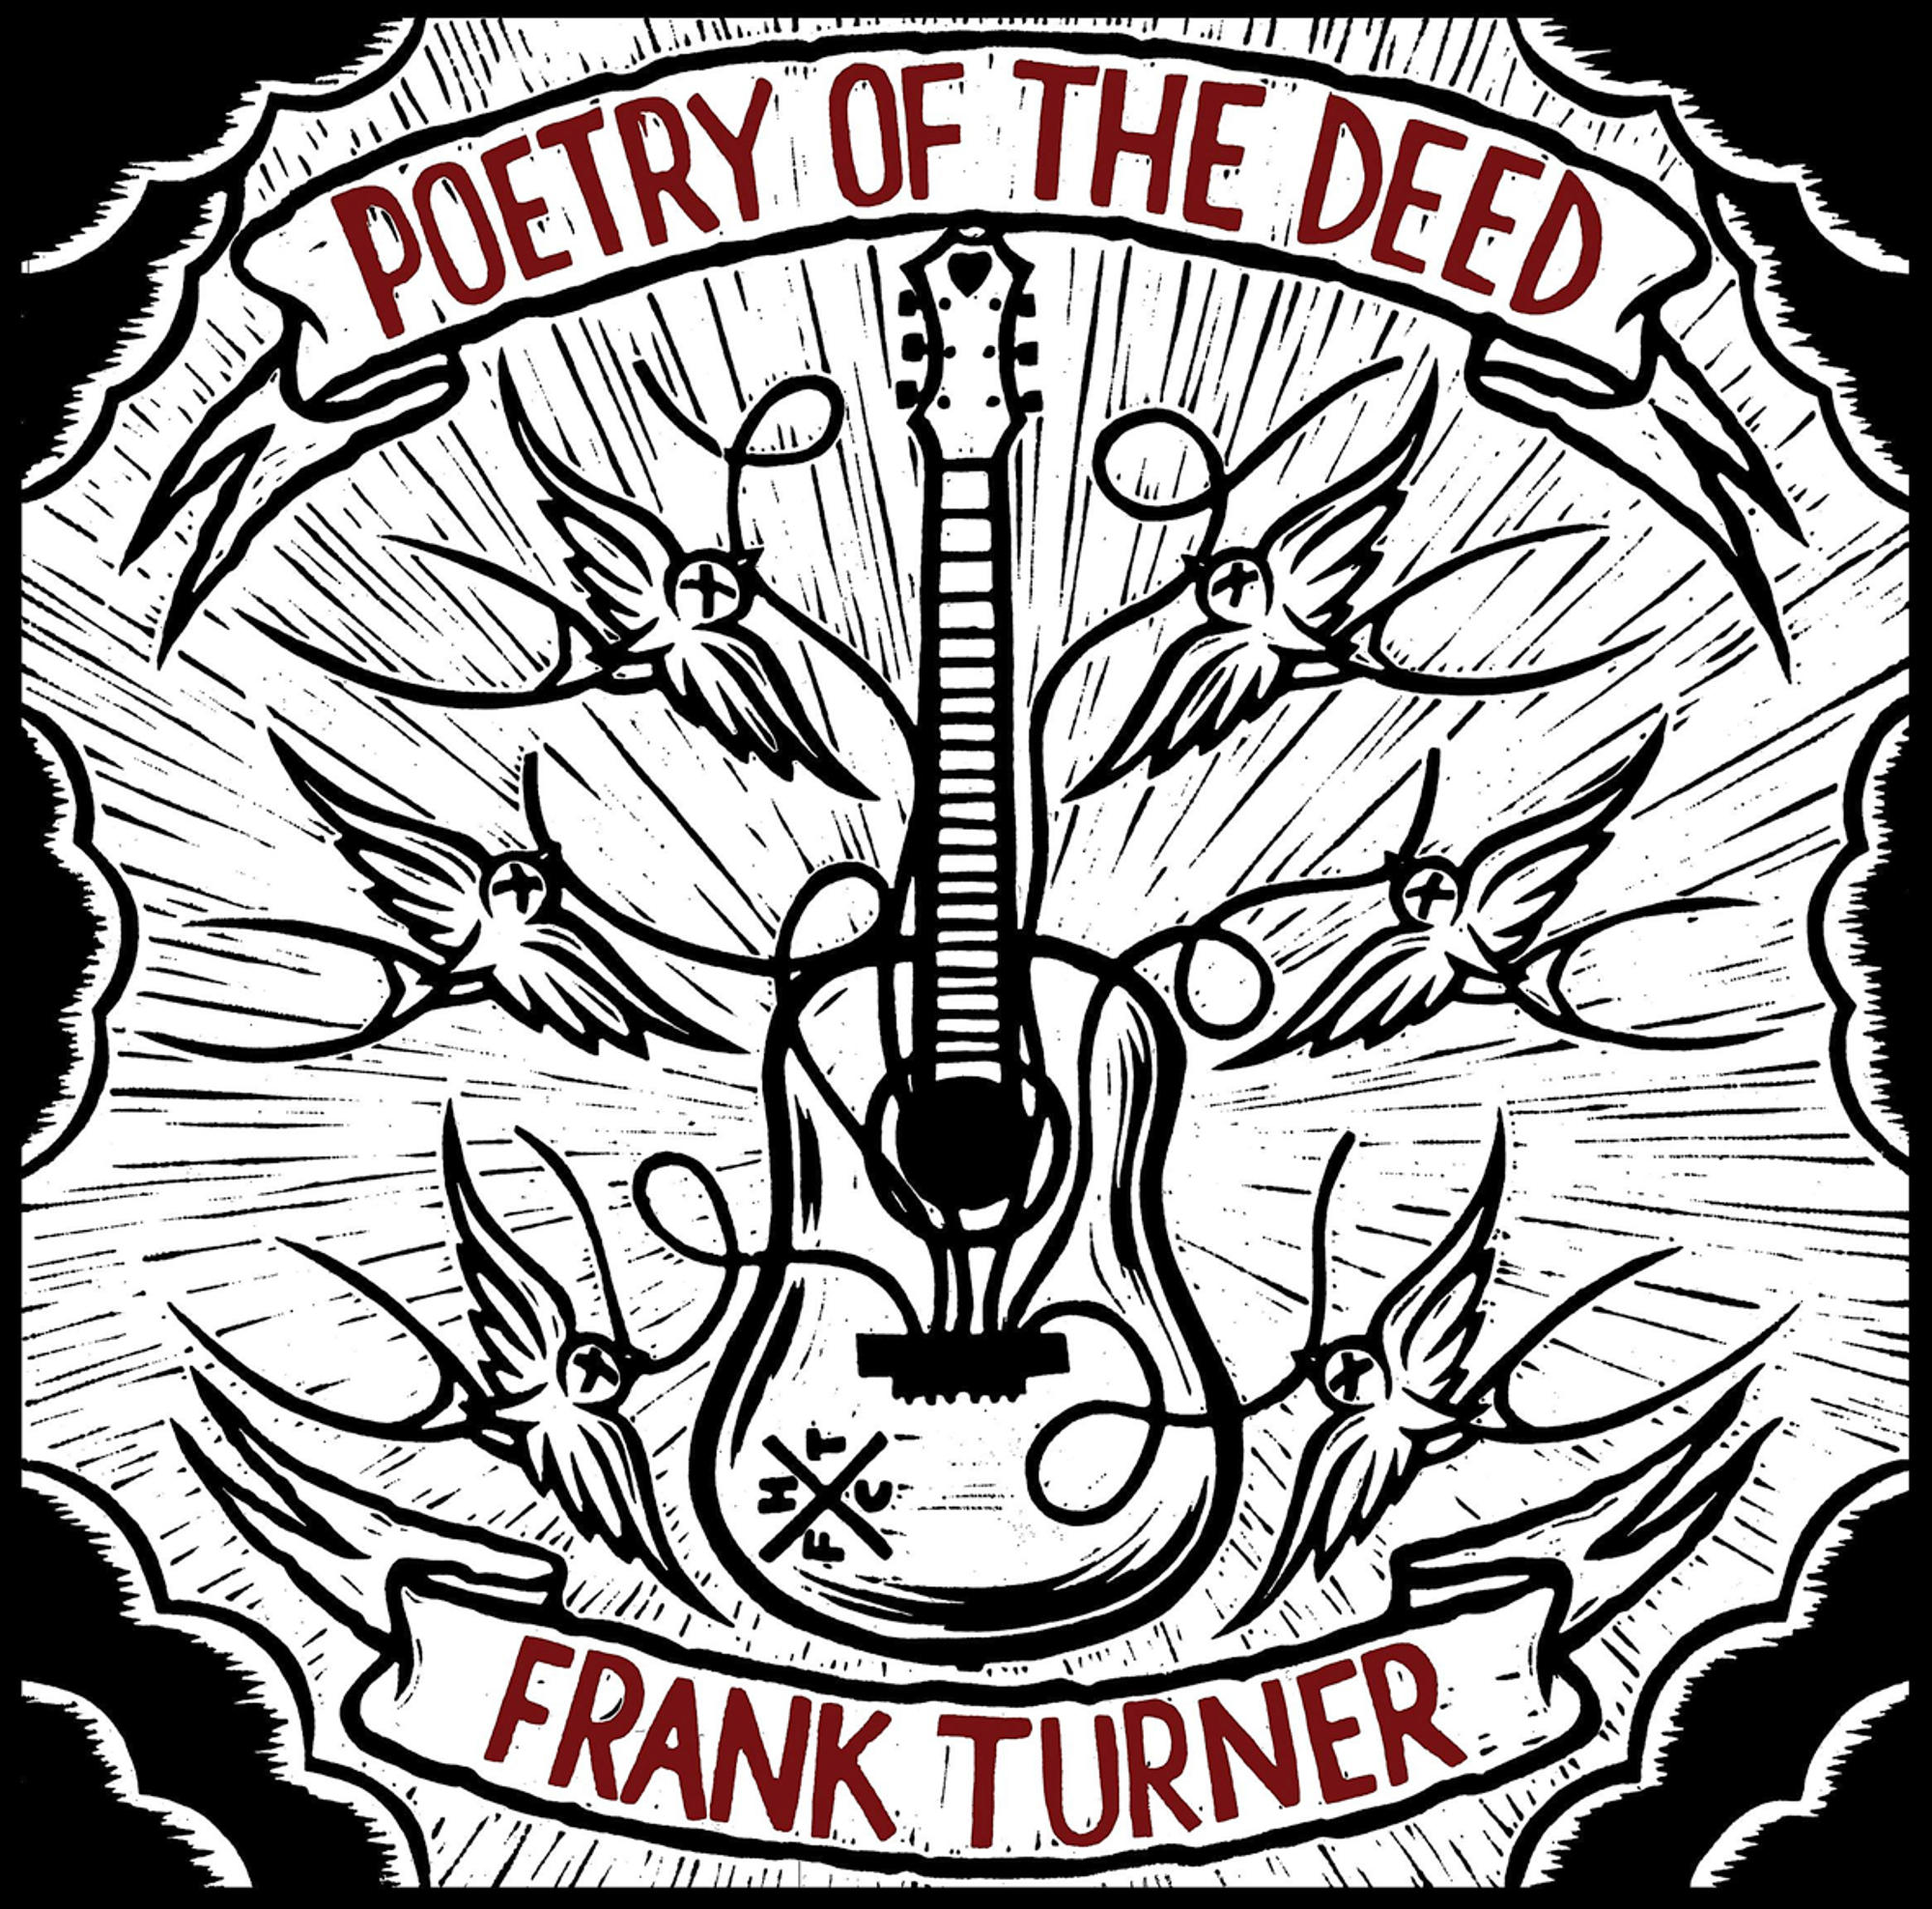 Of Deed - Turner The (CD) Frank Poetry -